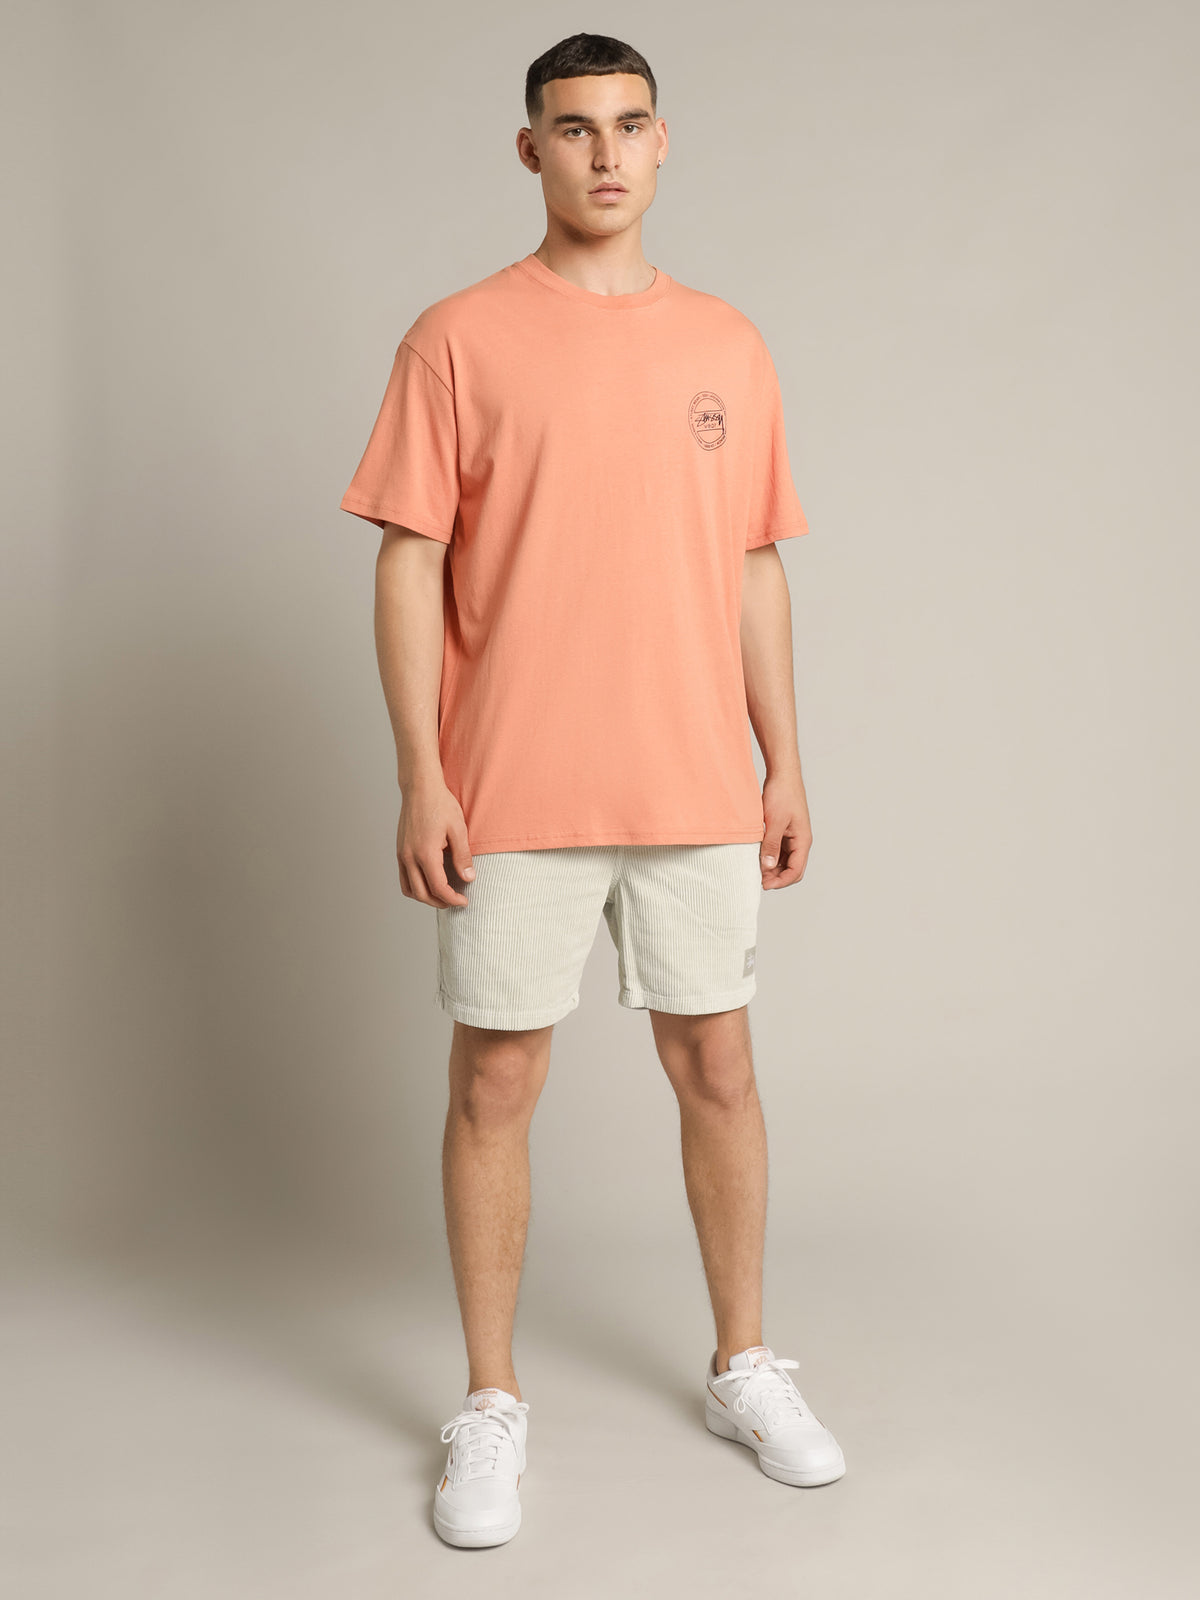 Stussy Wear Short Sleeve T-Shirt in Melon